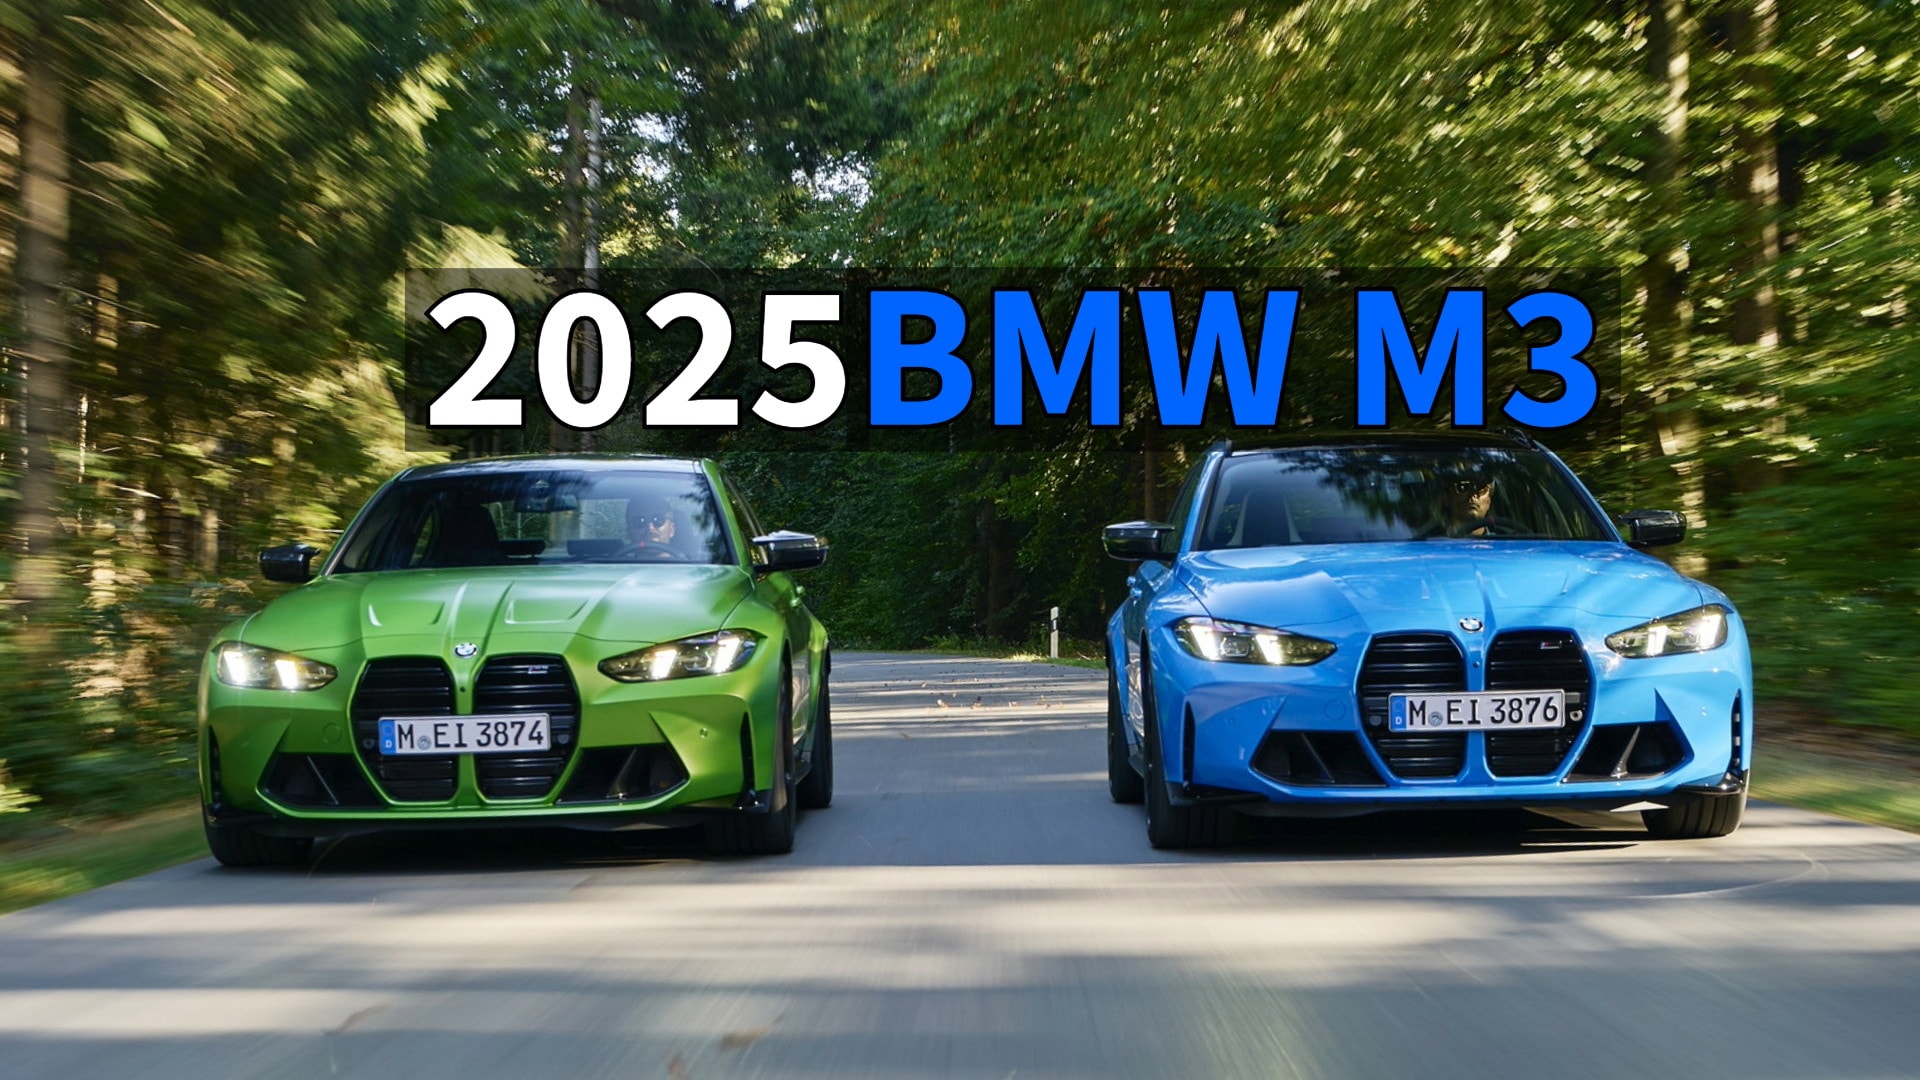 Le prix de la BMW M3 Berline 2025 commence à 163 700 $ en Australie